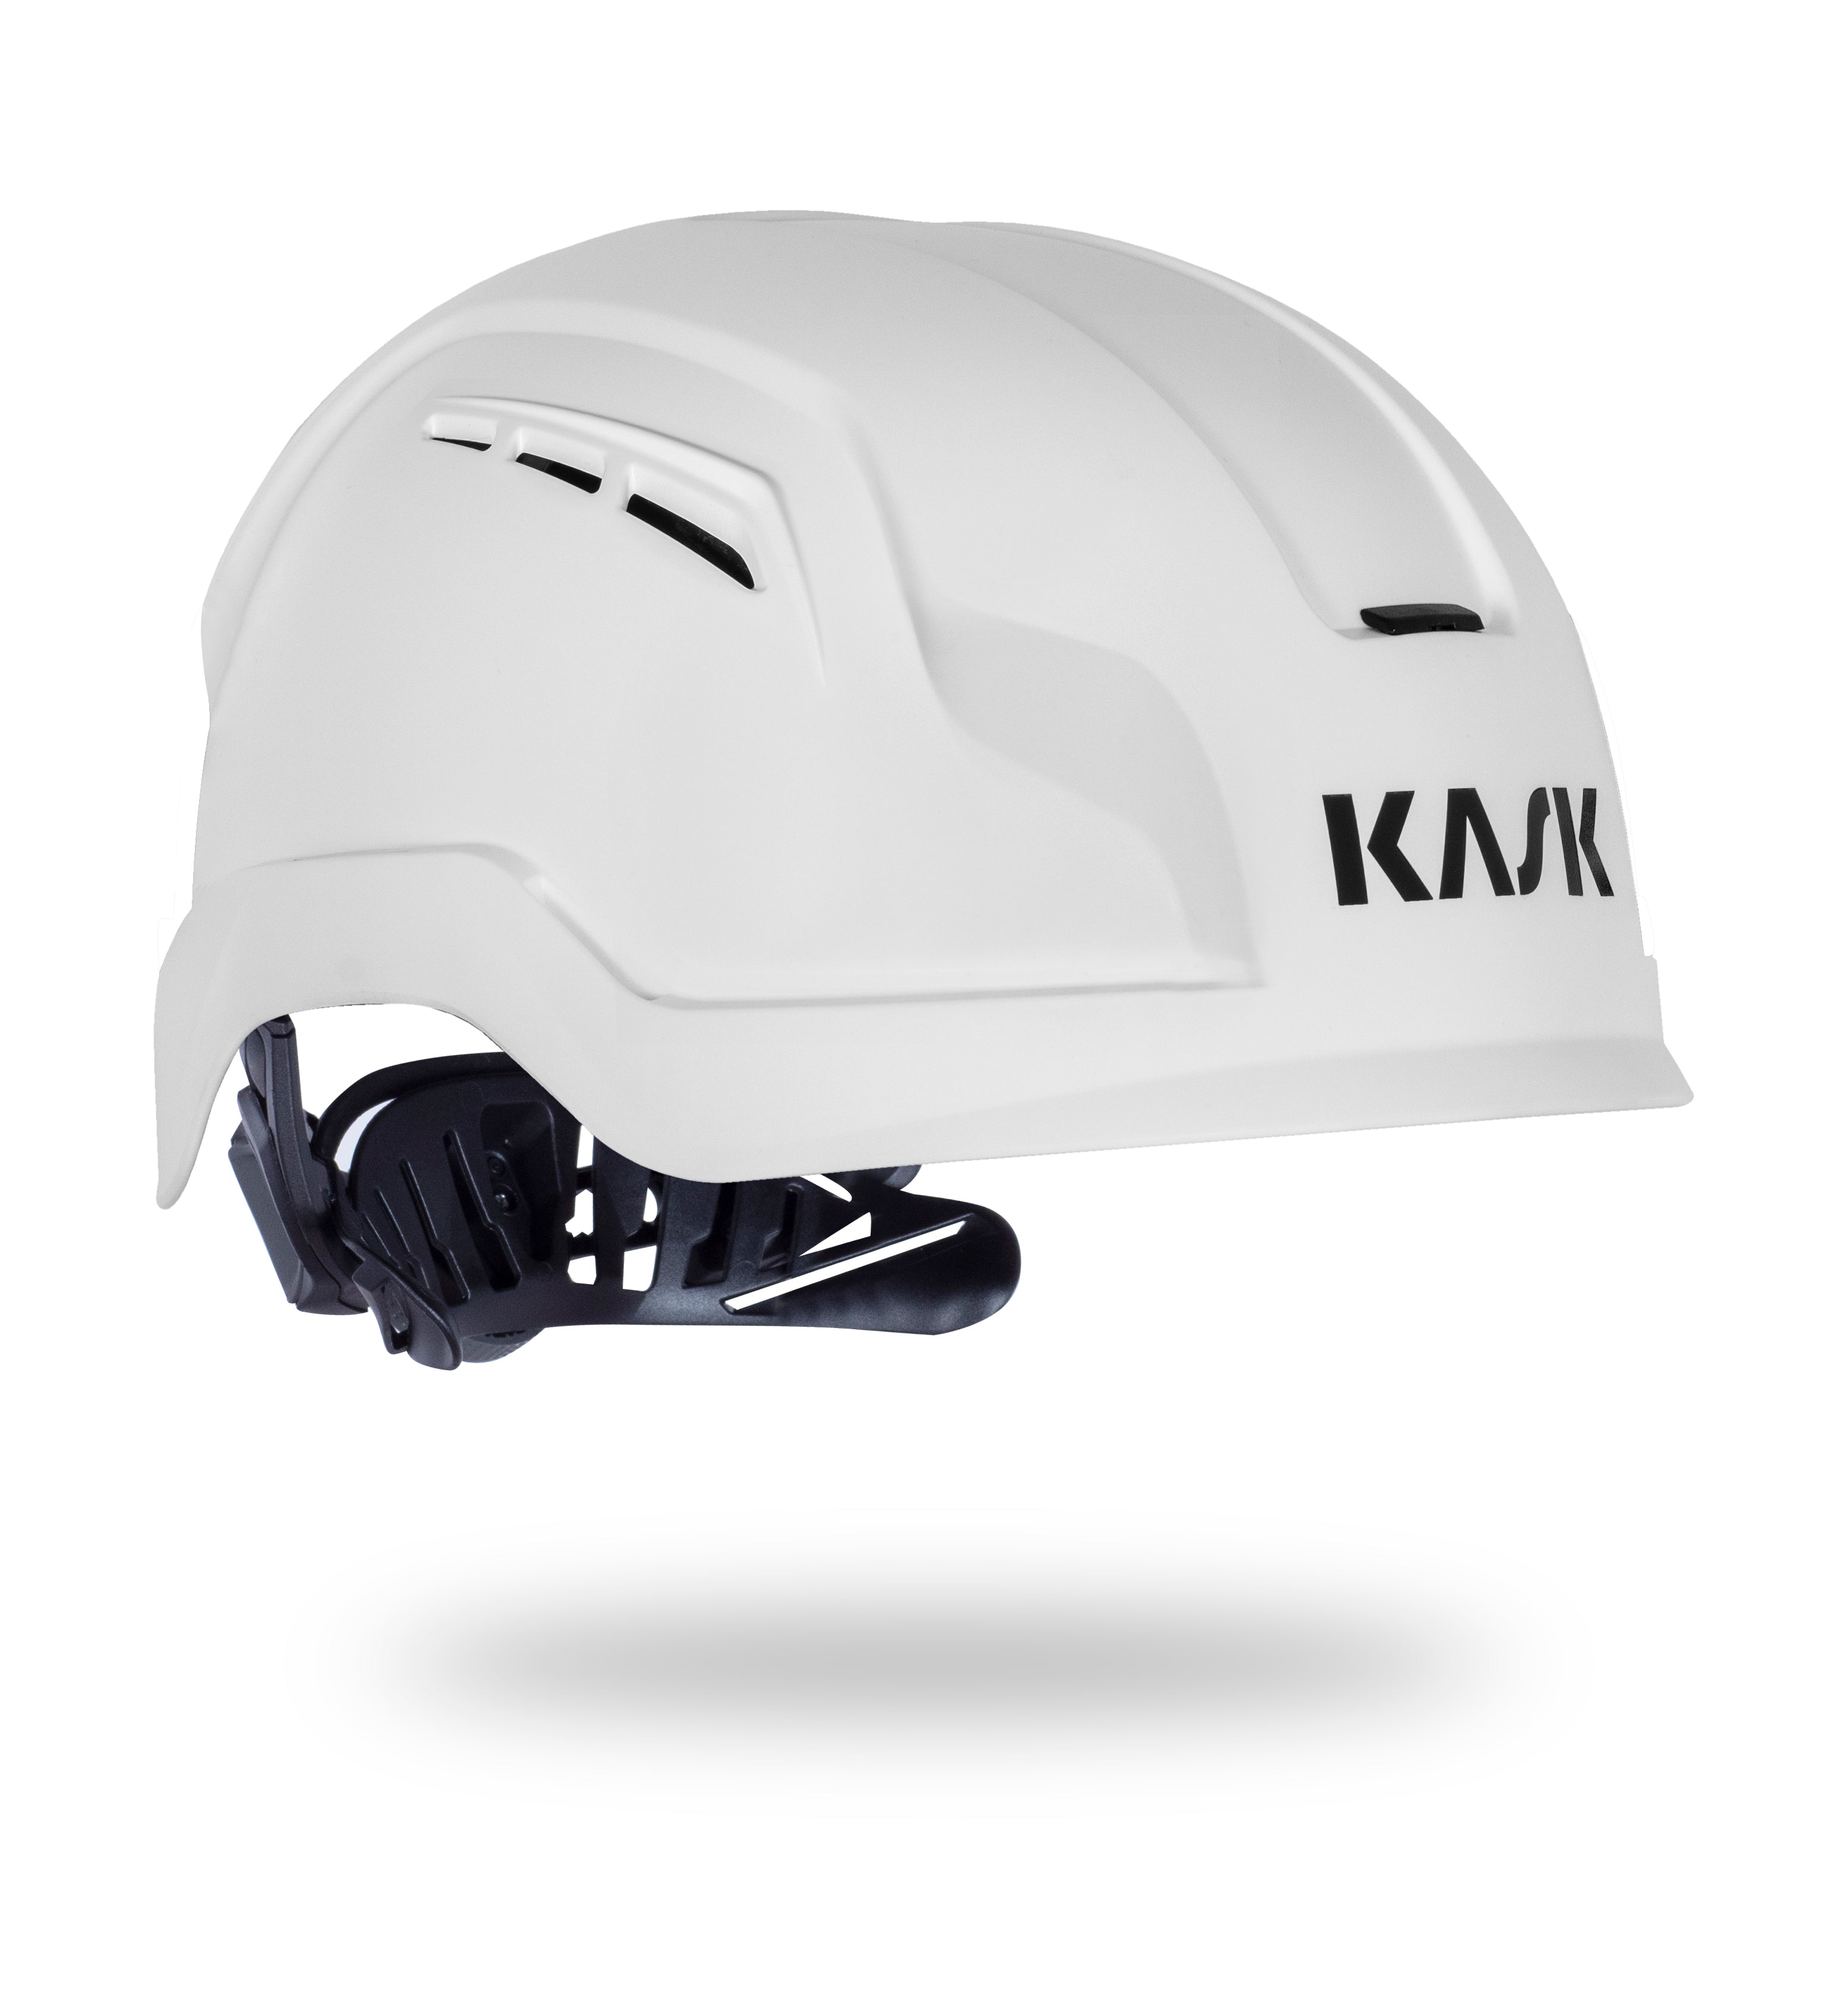 KASK Zenith X BA Air Helmet